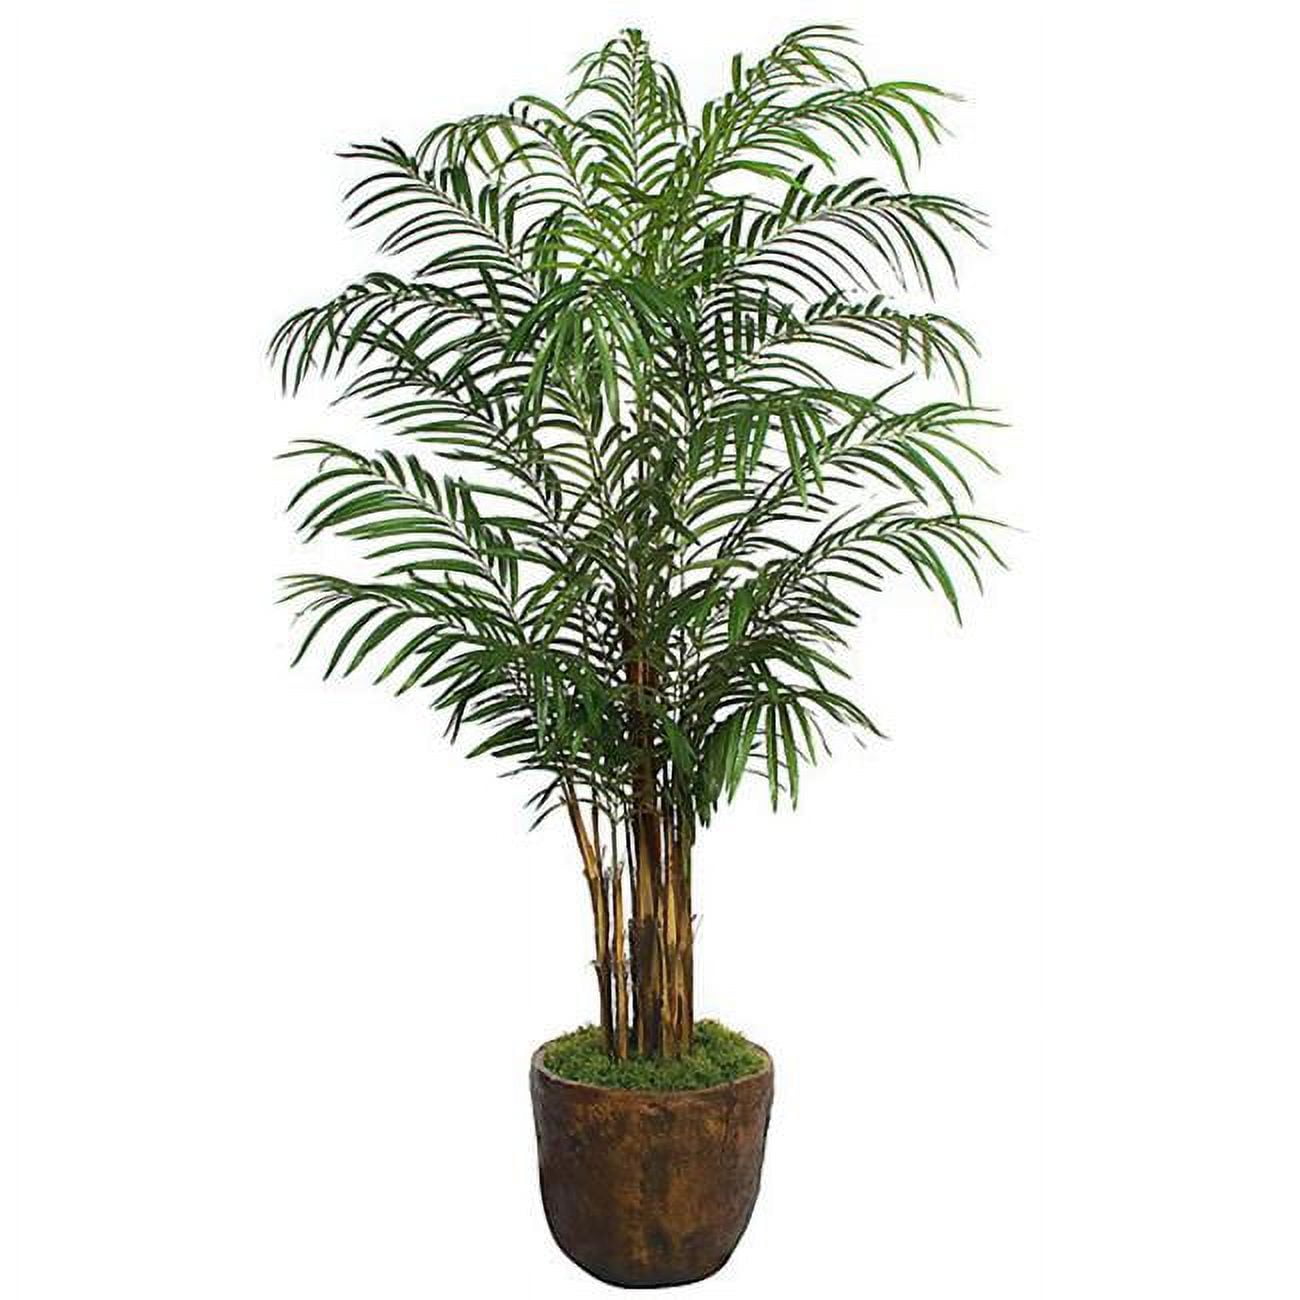 P-150820 8 Ft. Areca Palm Tree, Green